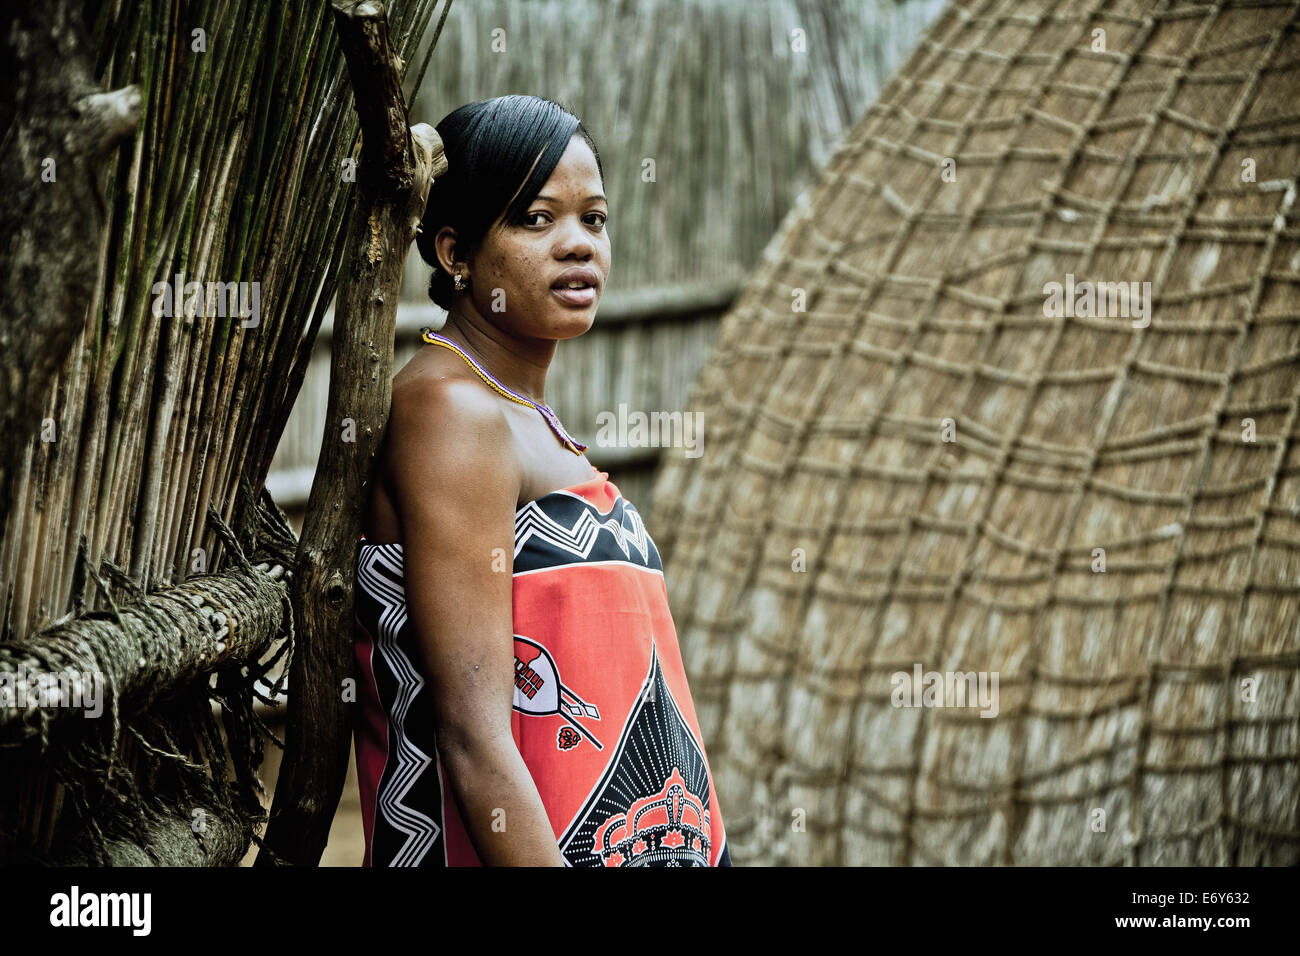 Jeune femme de la tribu Swazi traditionnel dans un village Swazi, Swaziland, Afrique Banque D'Images